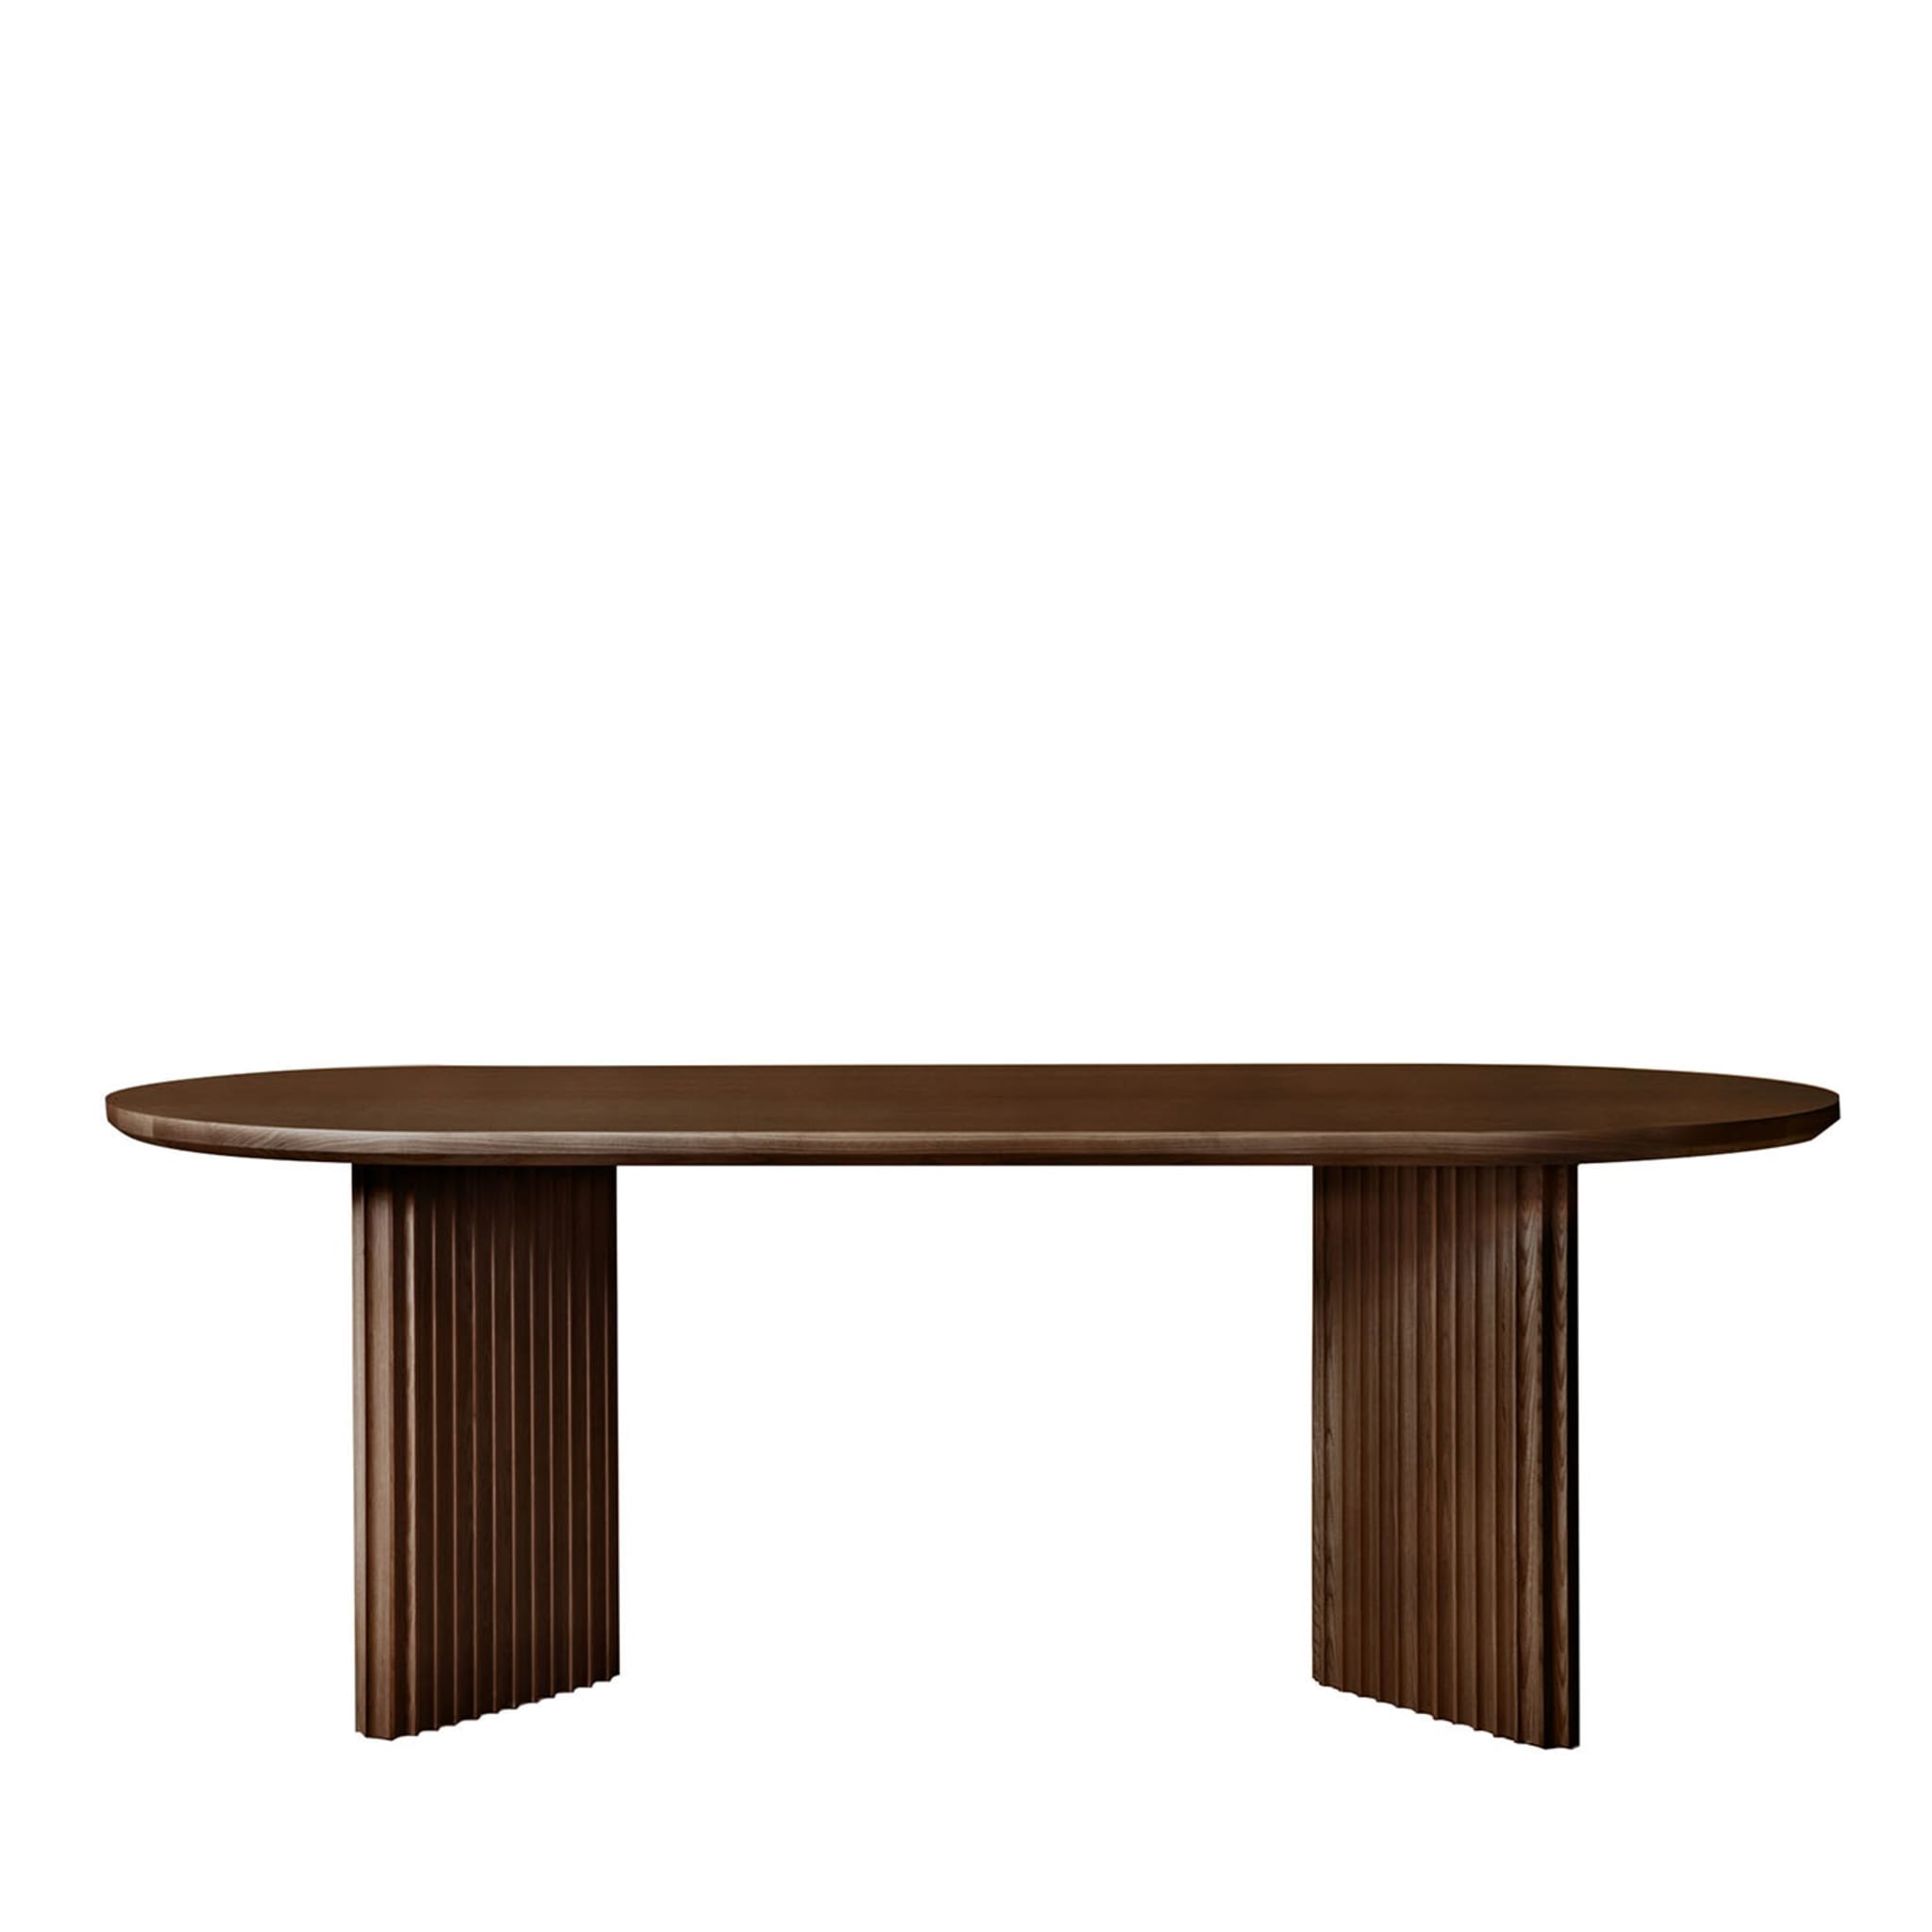 Basalto Brown Ash Table - Main view